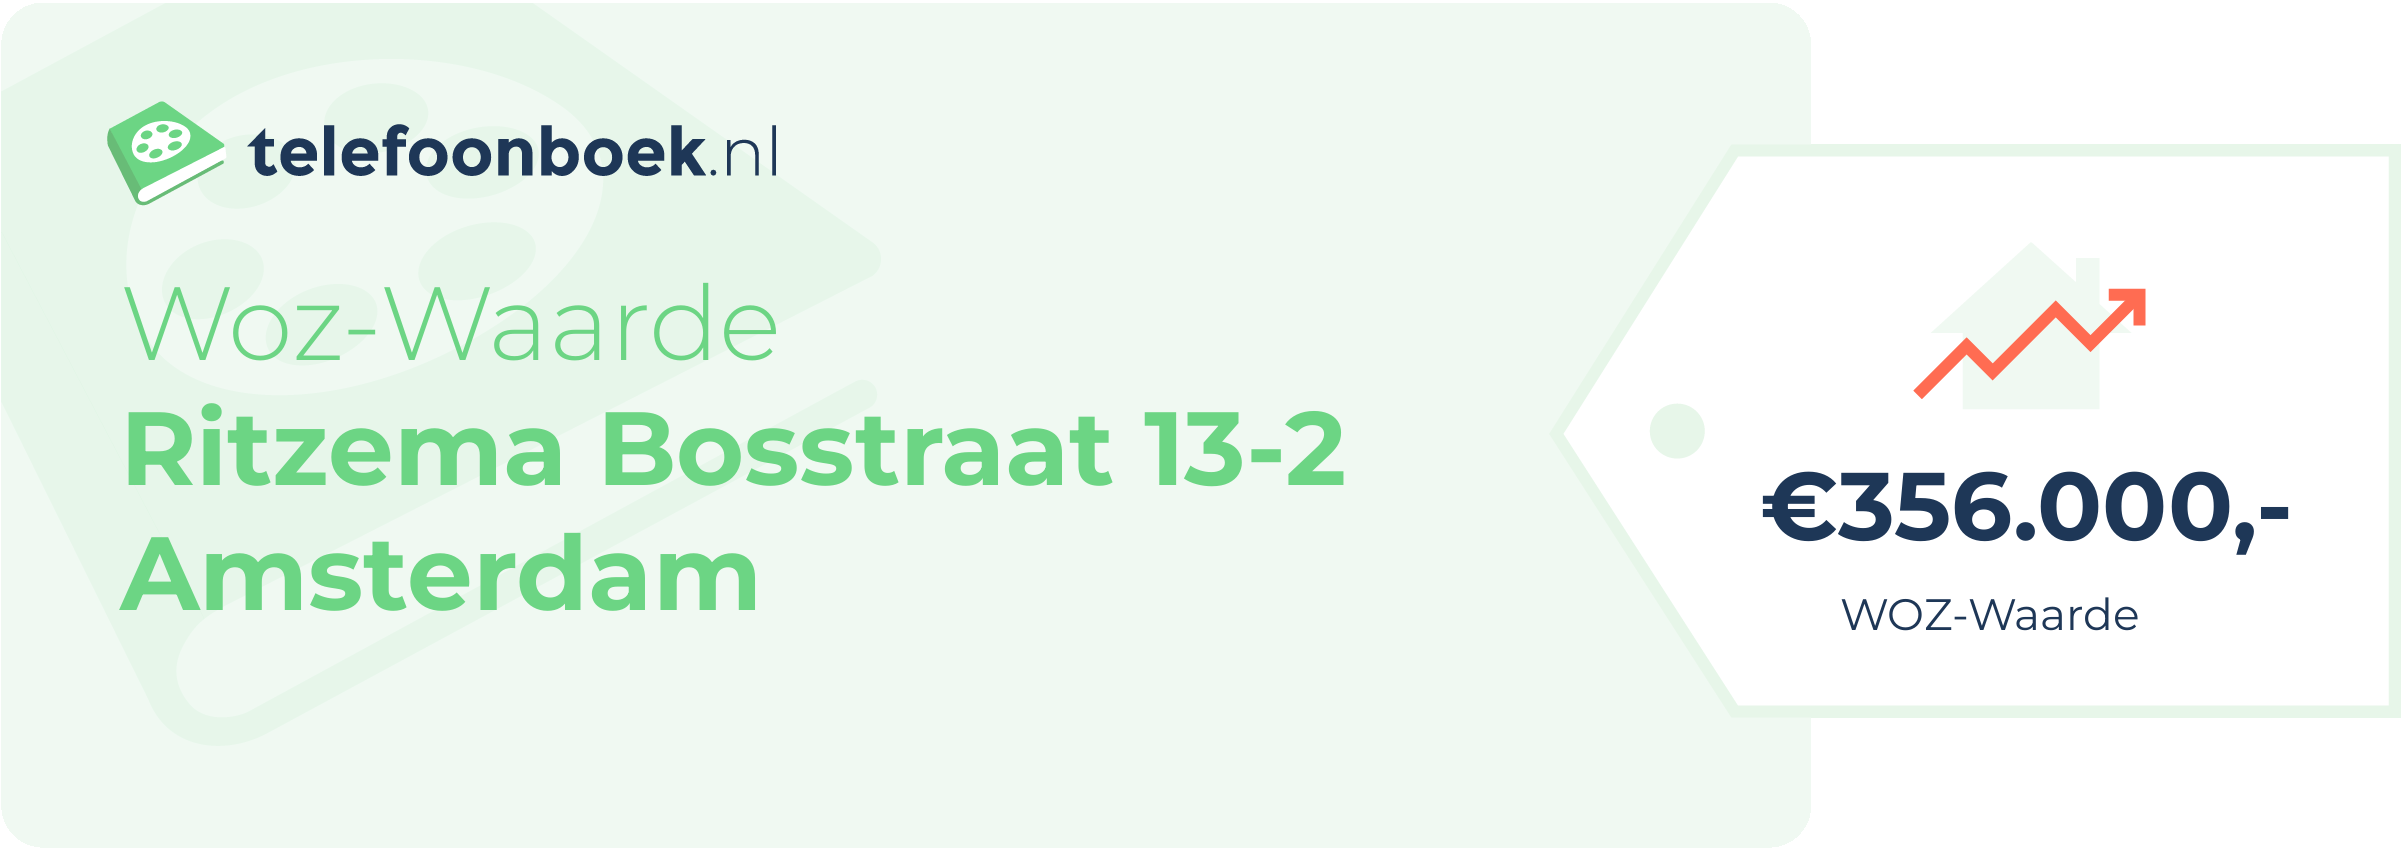 WOZ-waarde Ritzema Bosstraat 13-2 Amsterdam